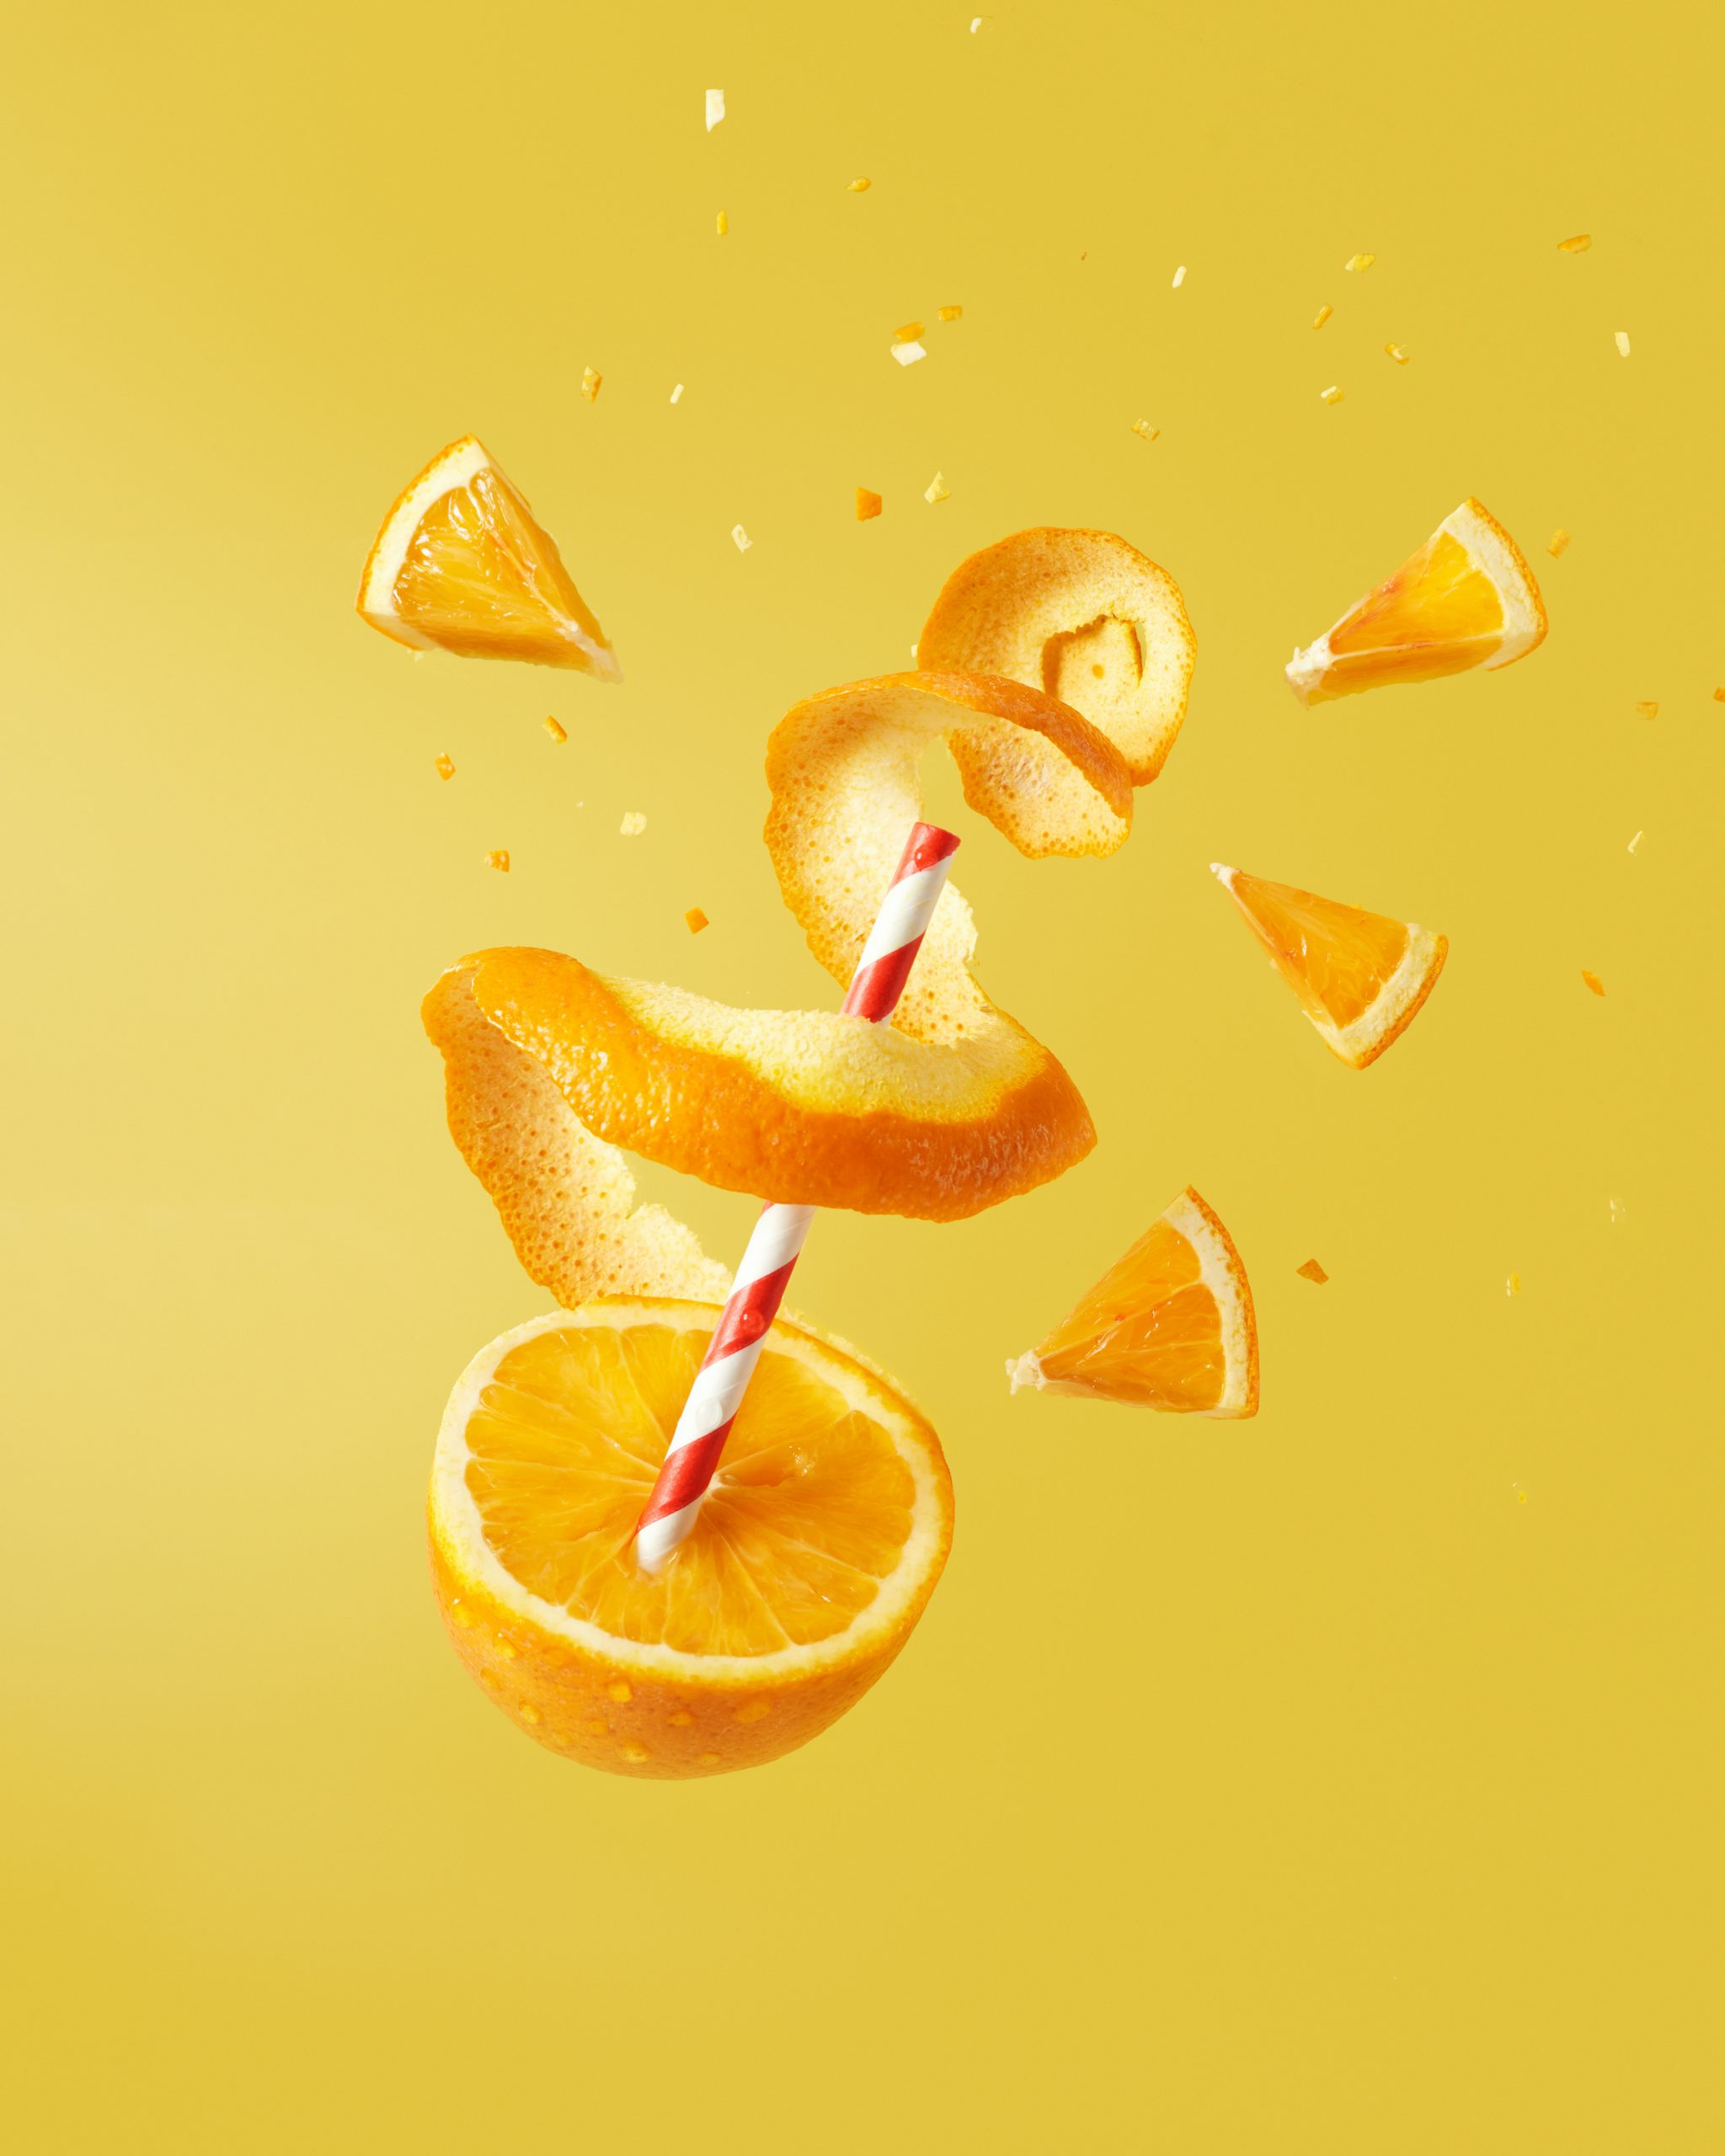 Citrus flavour